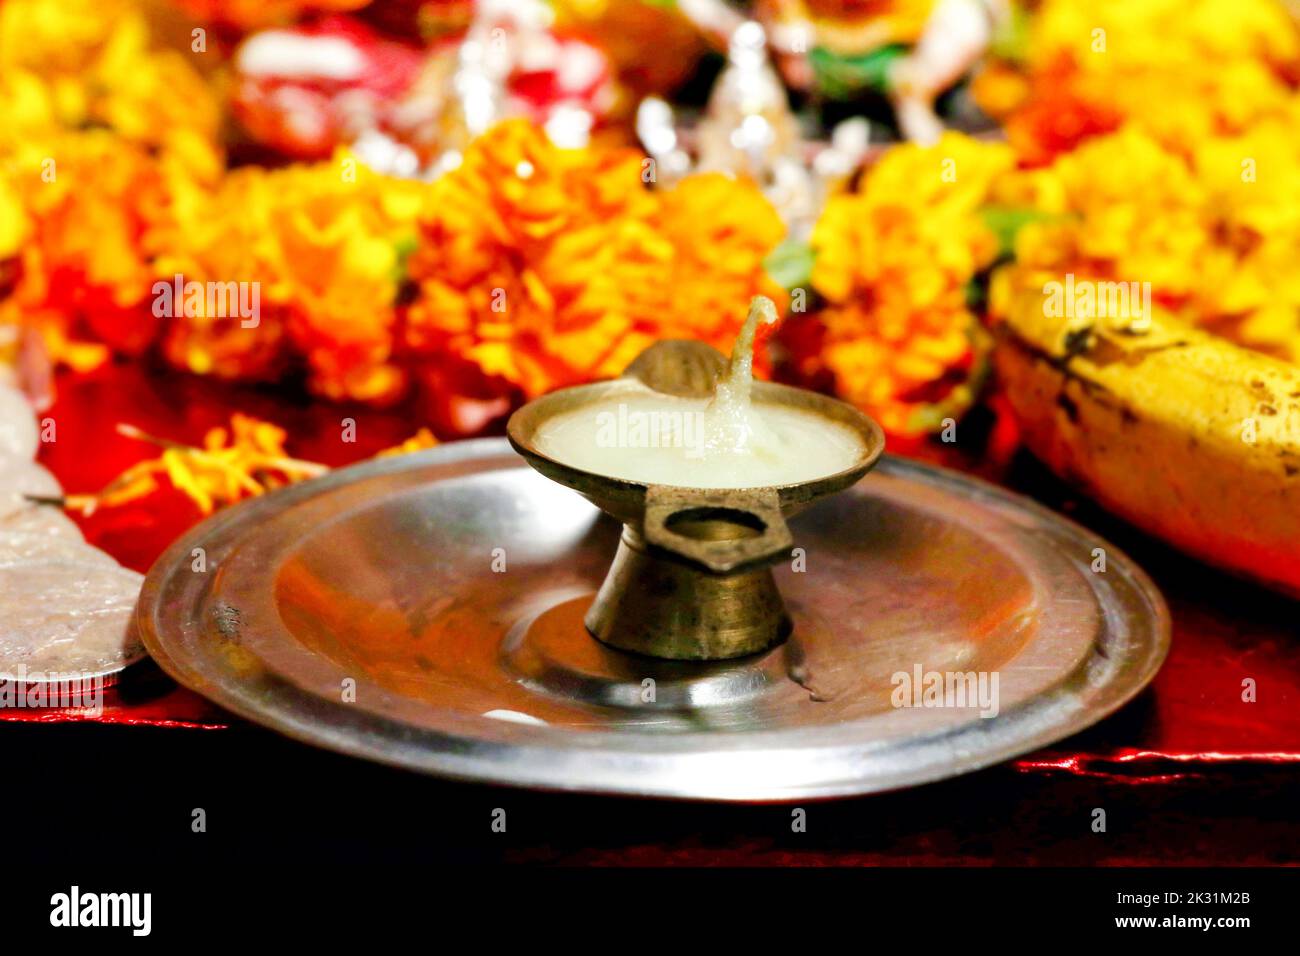 Oggetti di preghiera Pooja Material / Puja Sahitya in religione indù dall'India, organizzato in un gruppo. Fuoco selettivo Foto Stock